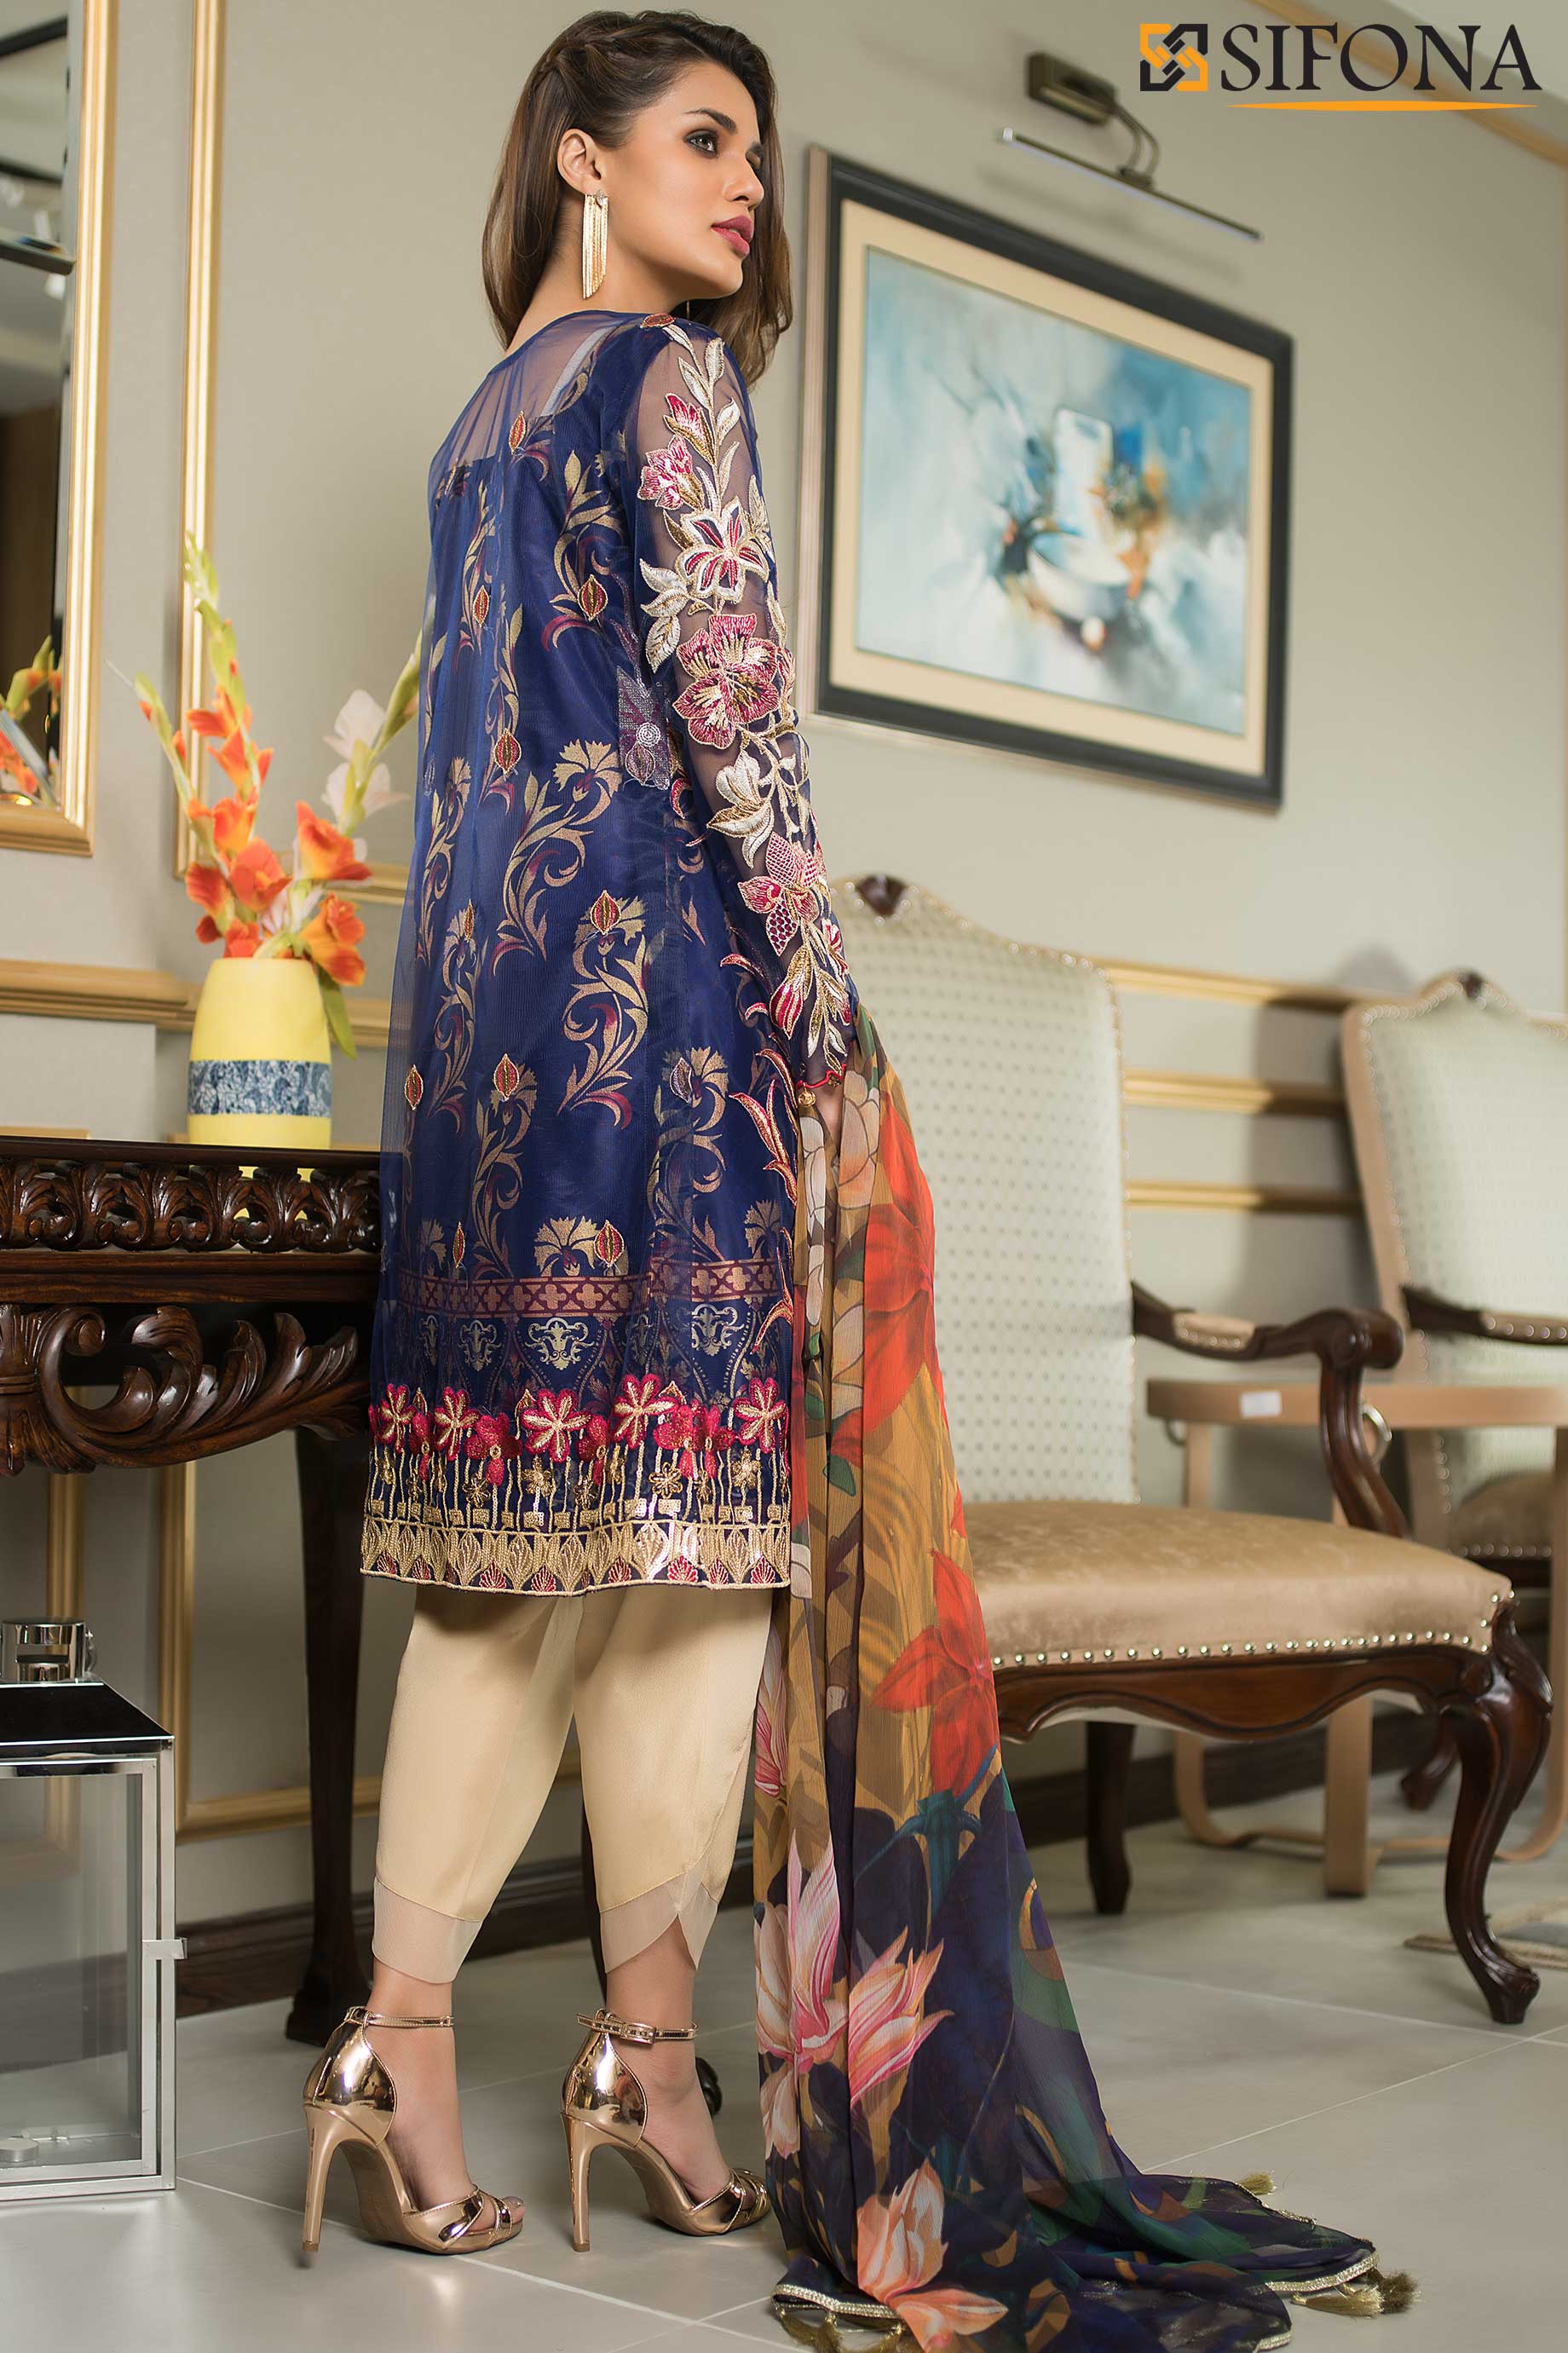 This beautiful dress has a stylish Pakistani formal dress by Sifona.